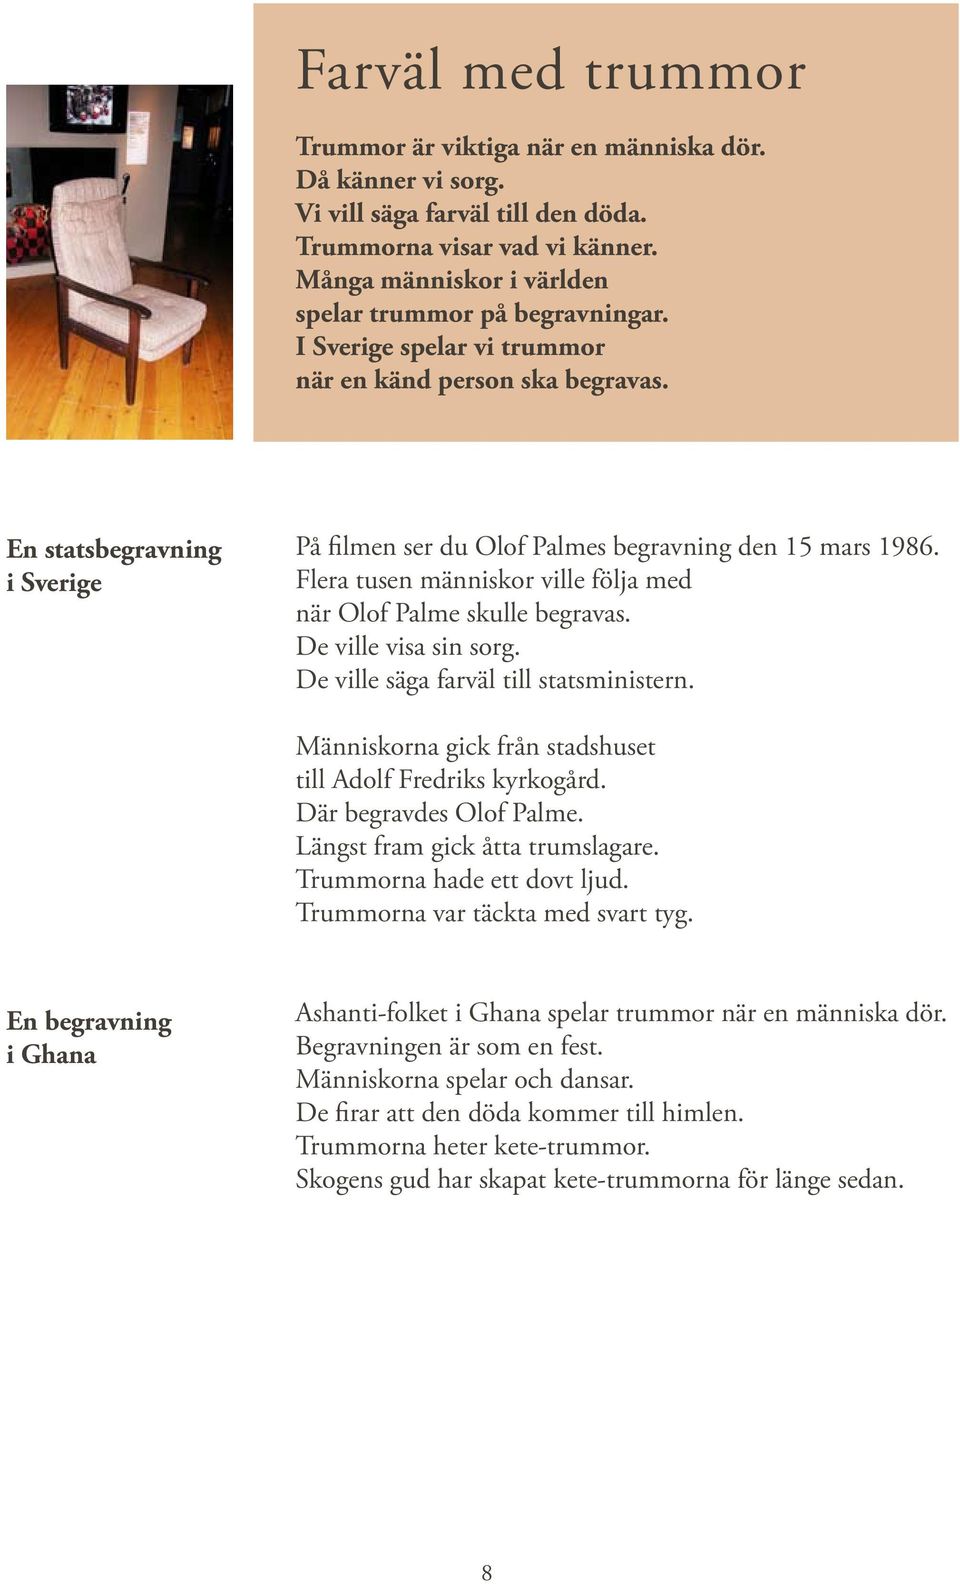 En statsbegravning i Sverige På filmen ser du Olof Palmes begravning den 15 mars 1986. Flera tusen människor ville följa med när Olof Palme skulle begravas. De ville visa sin sorg.